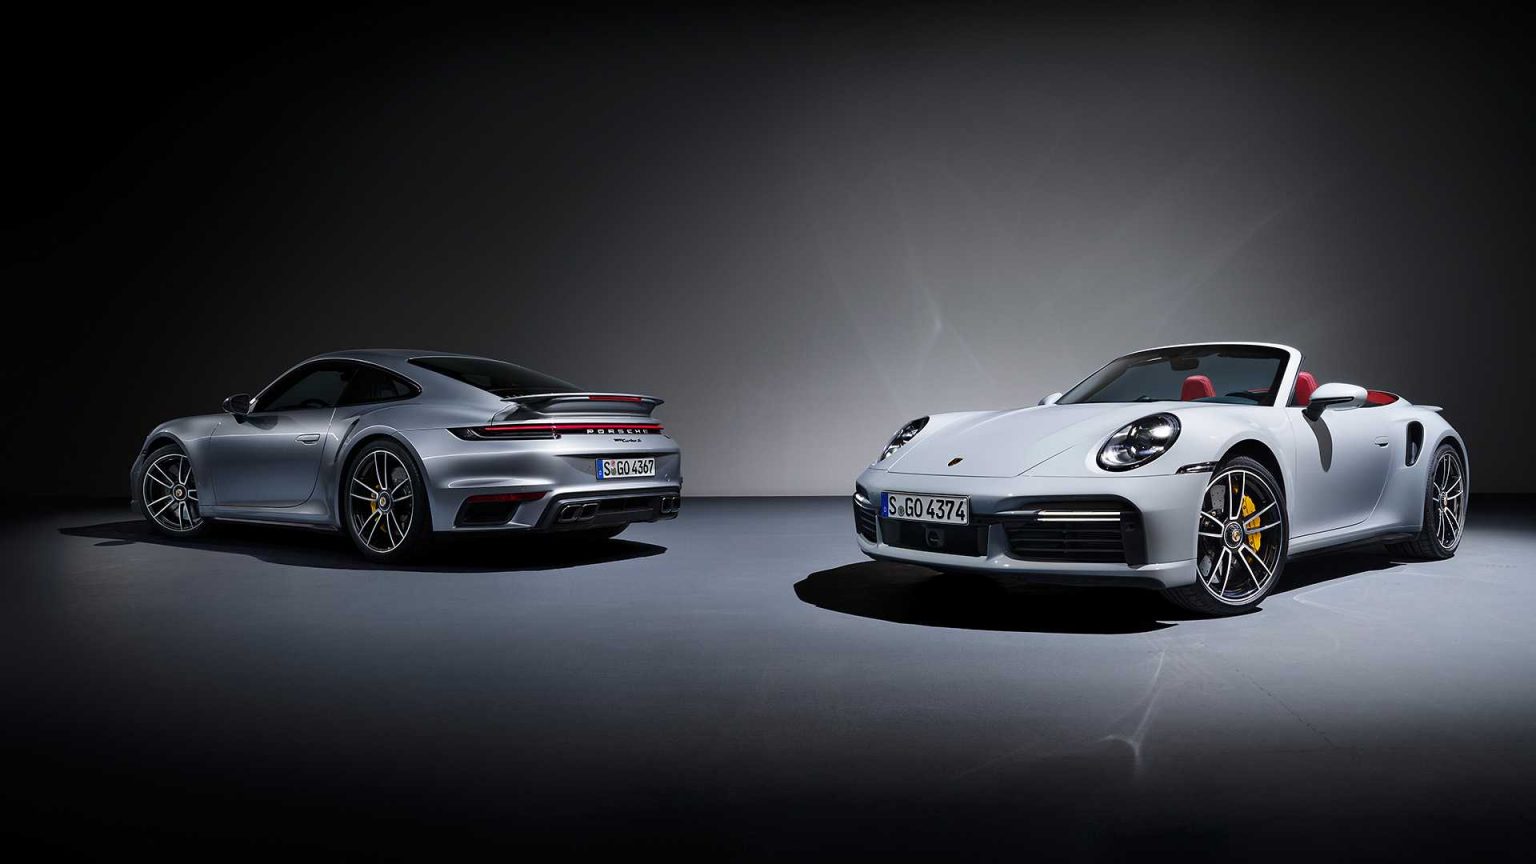 Nowe Porsche 911 Turbo i Turbo S (992) oficjalnie zdjęcia